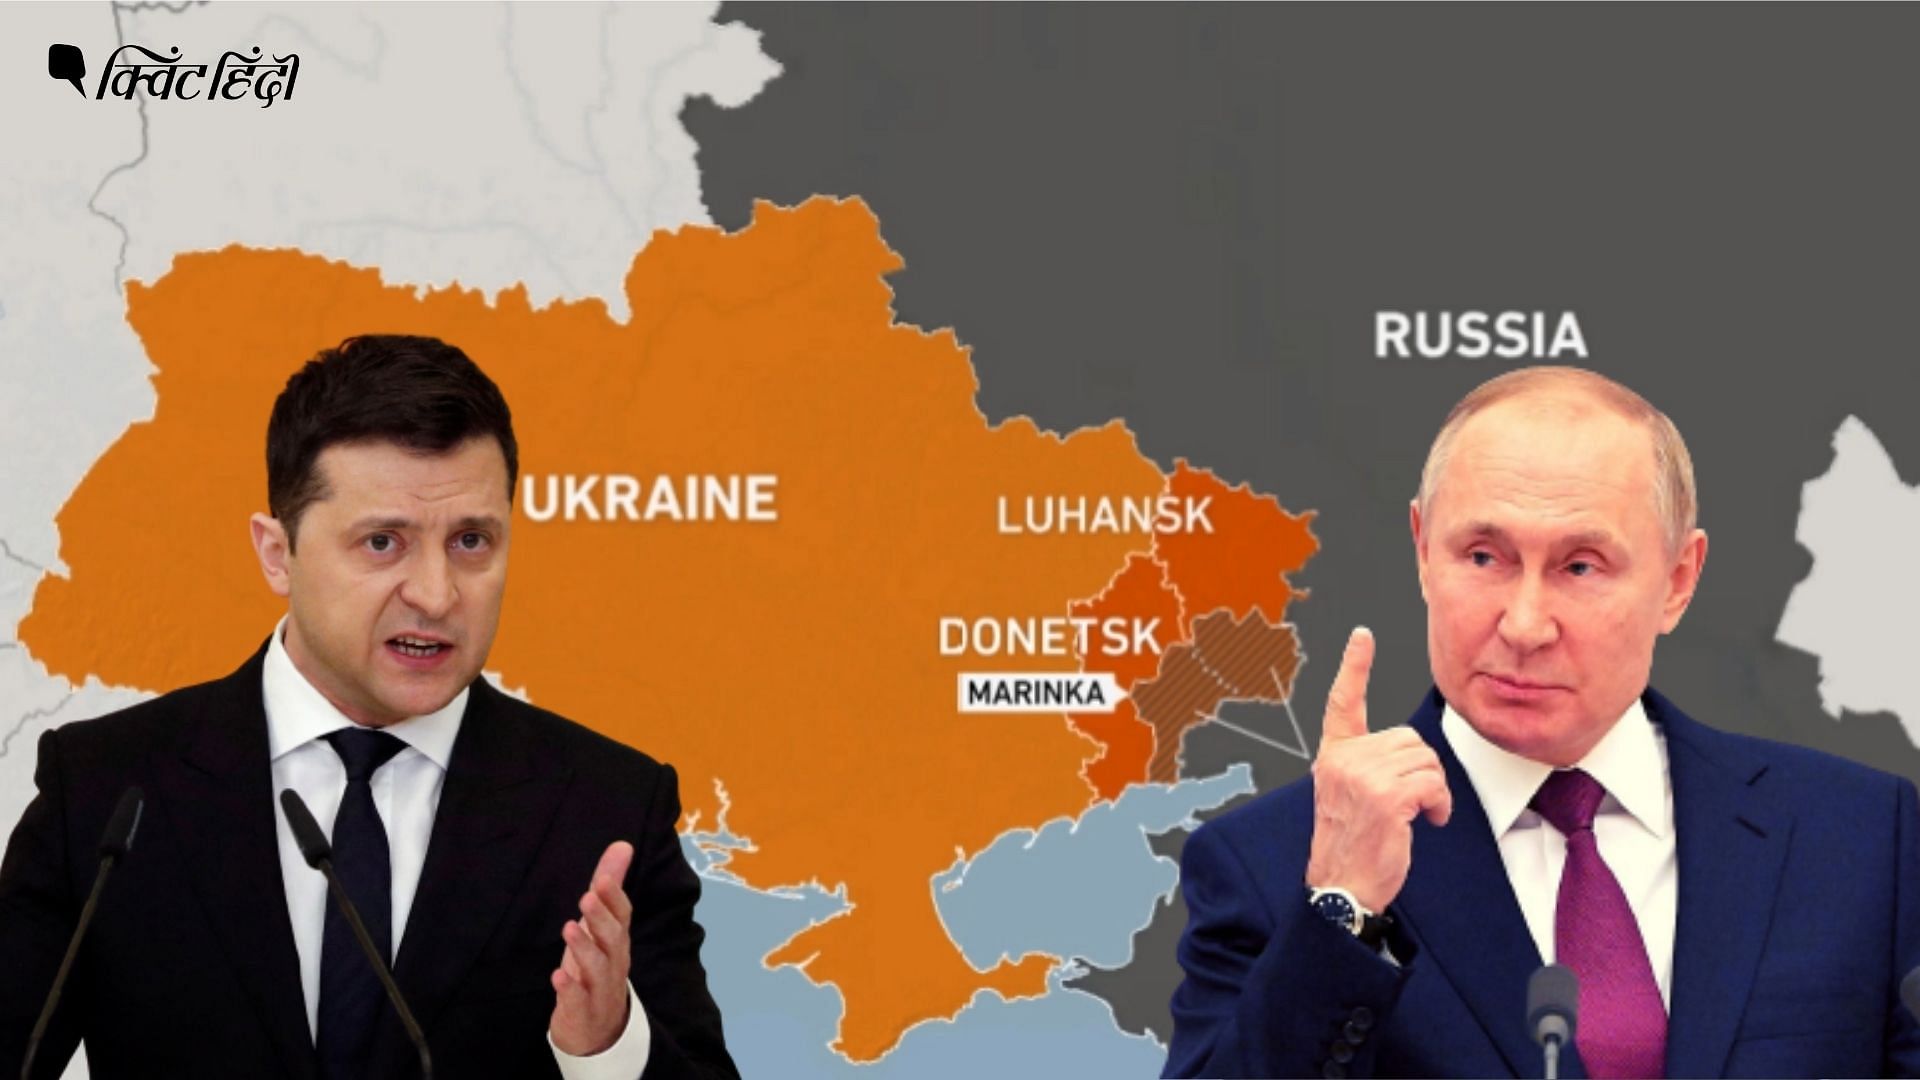 <div class="paragraphs"><p>आठ साल की जंग,टूटते समझौते- रूस ने लुहांस्क और डोनेट्स्क को यूक्रेन से कैसे तोड़ा</p></div>